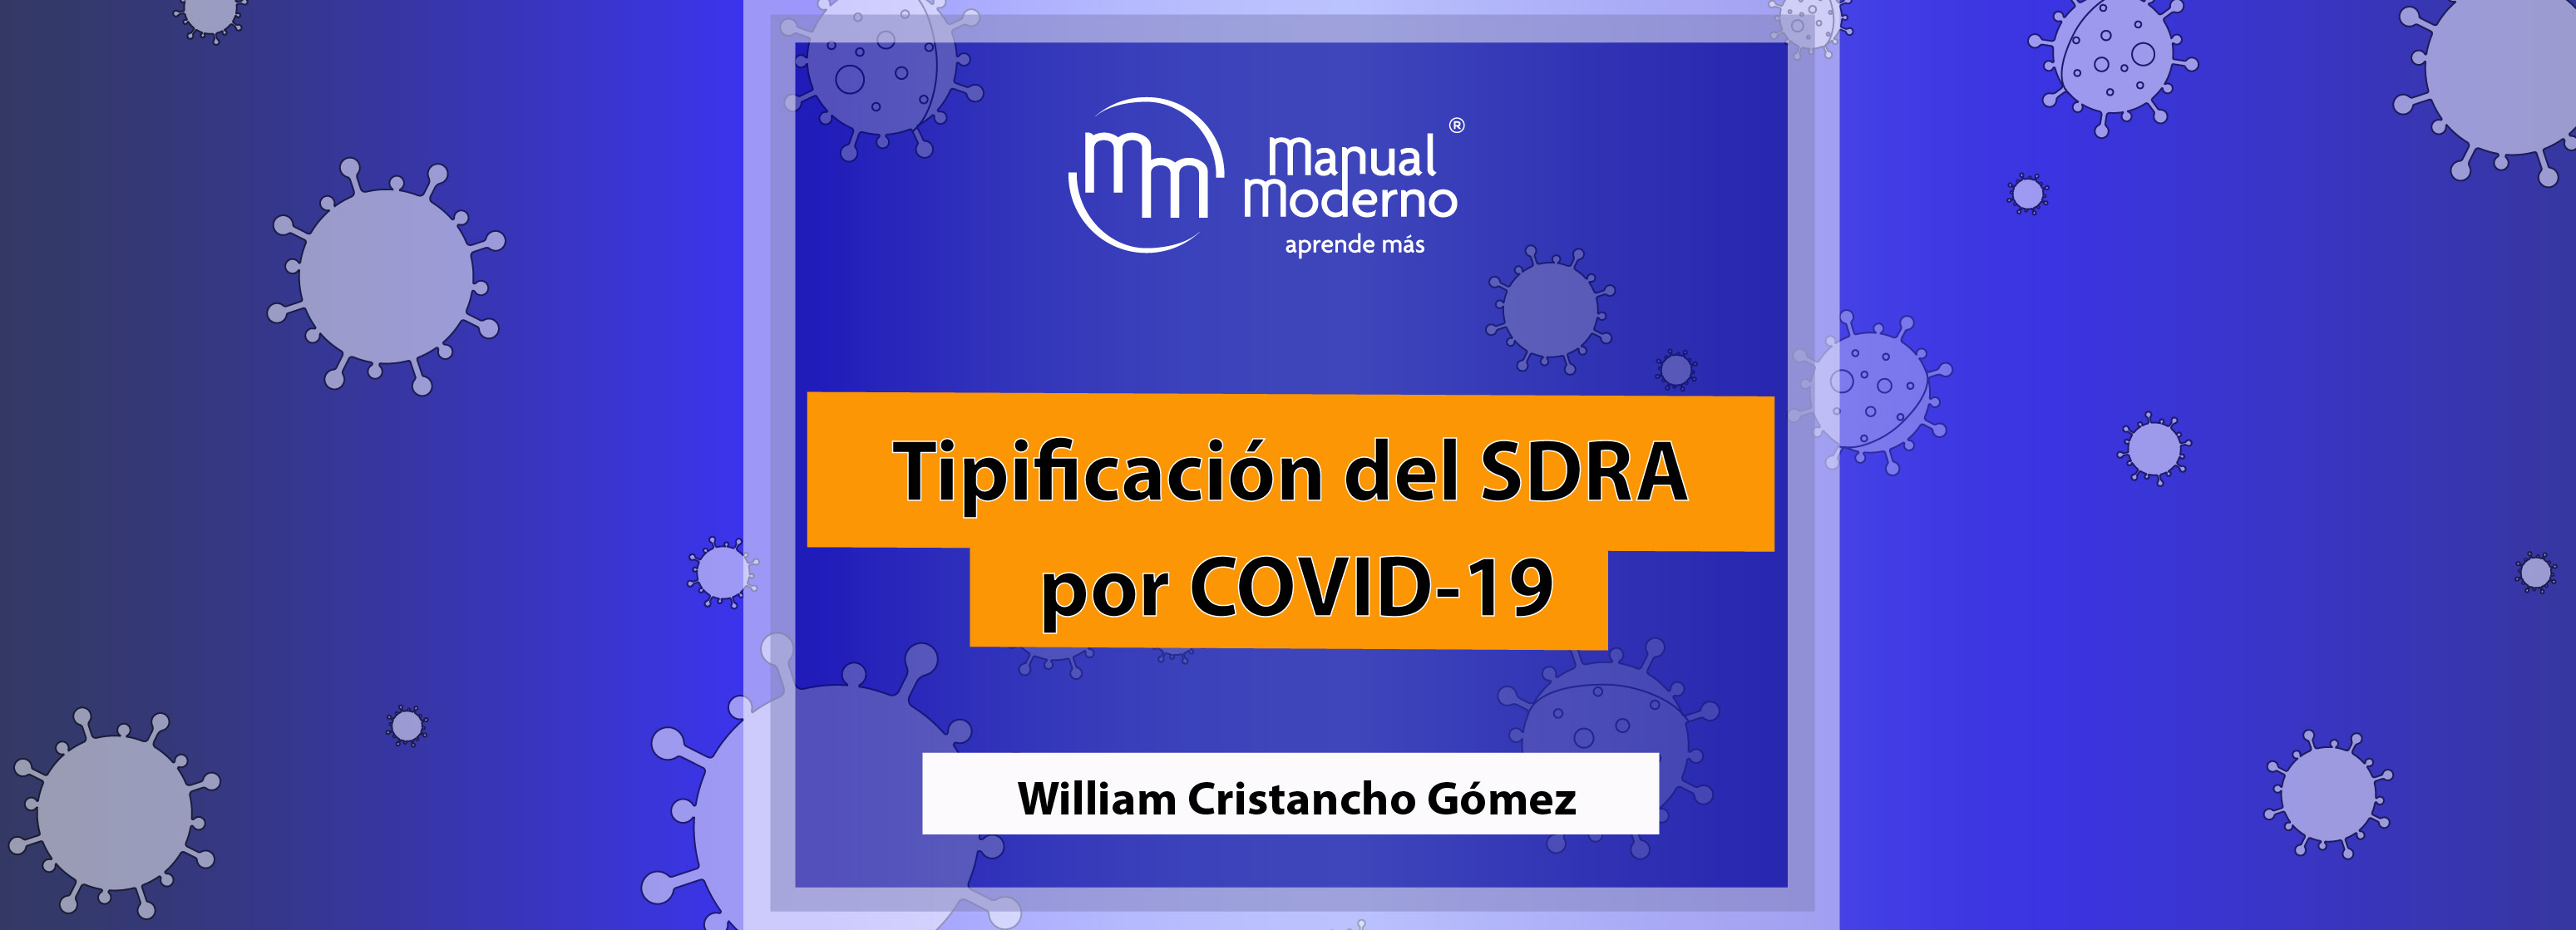 Tipificación del SDRA por COVID-19